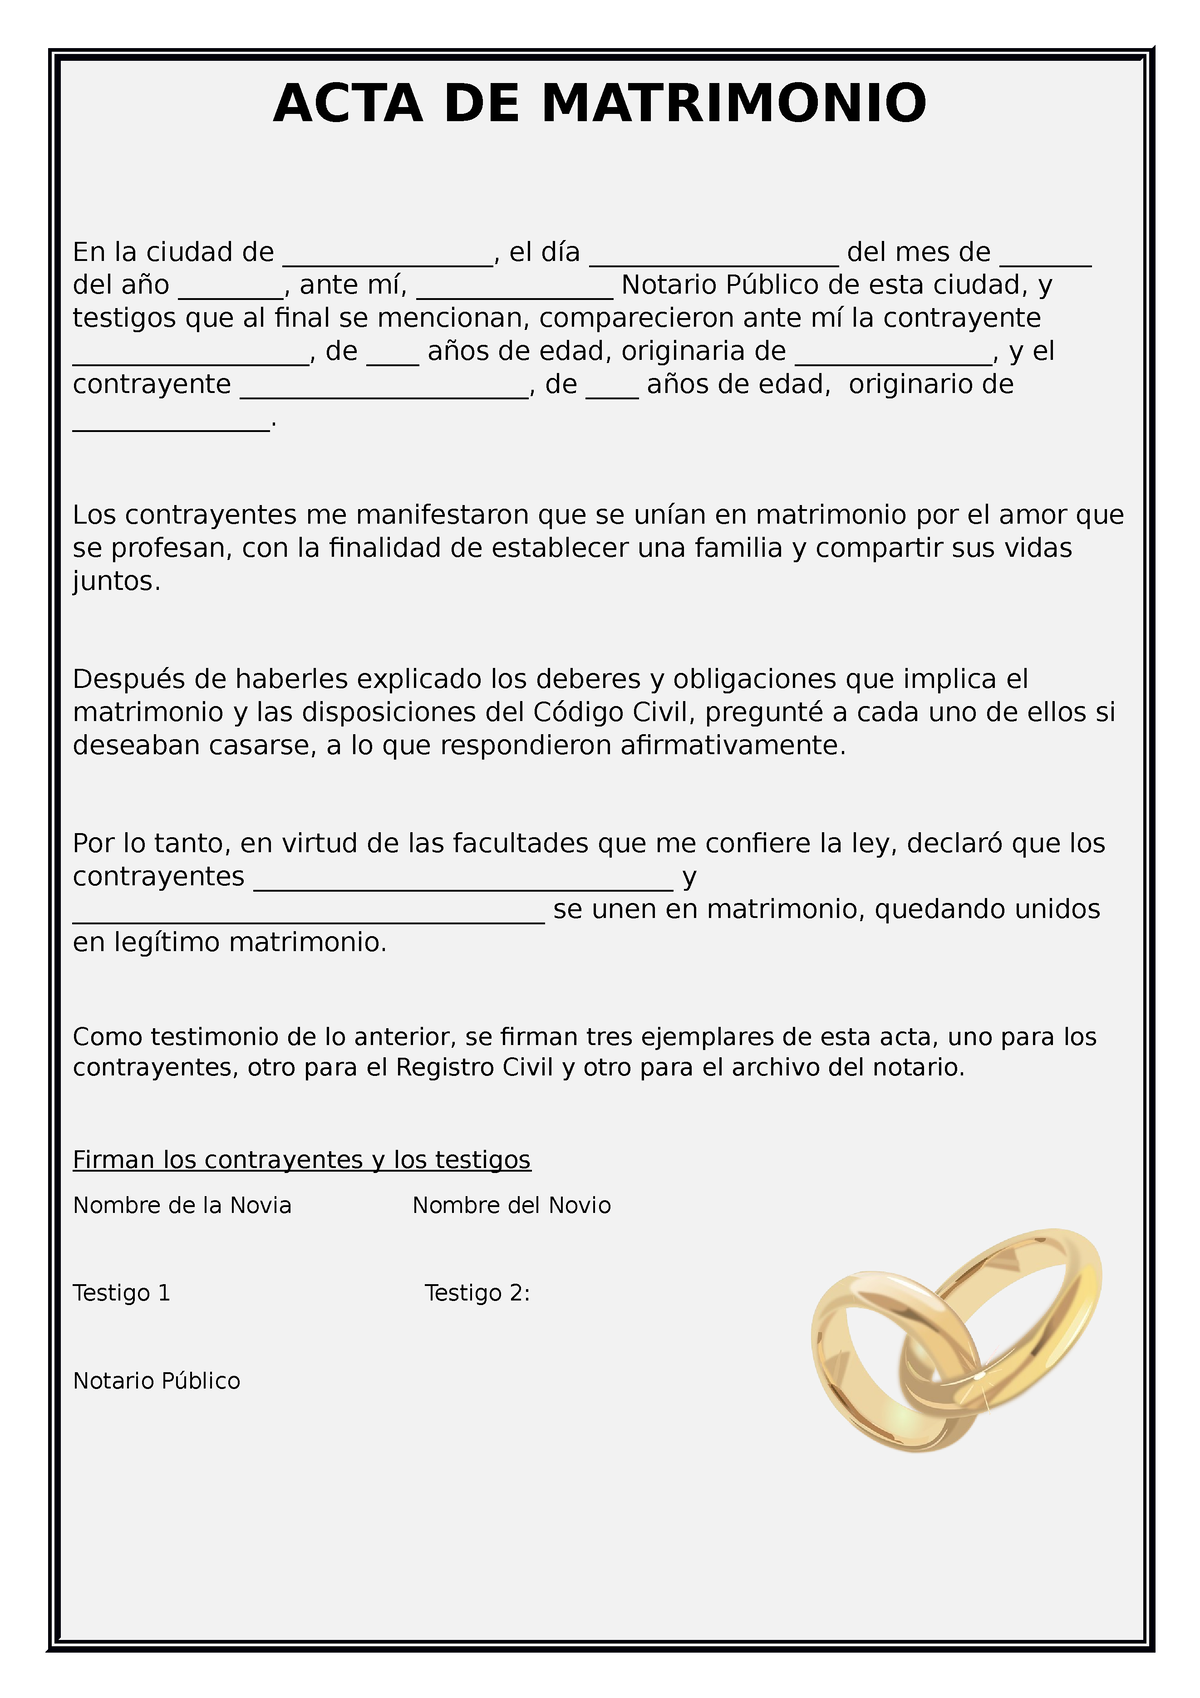 Acta De Matrimonio Falsa Online Acta De Matrimonio En La Ciudad De El Día 7767